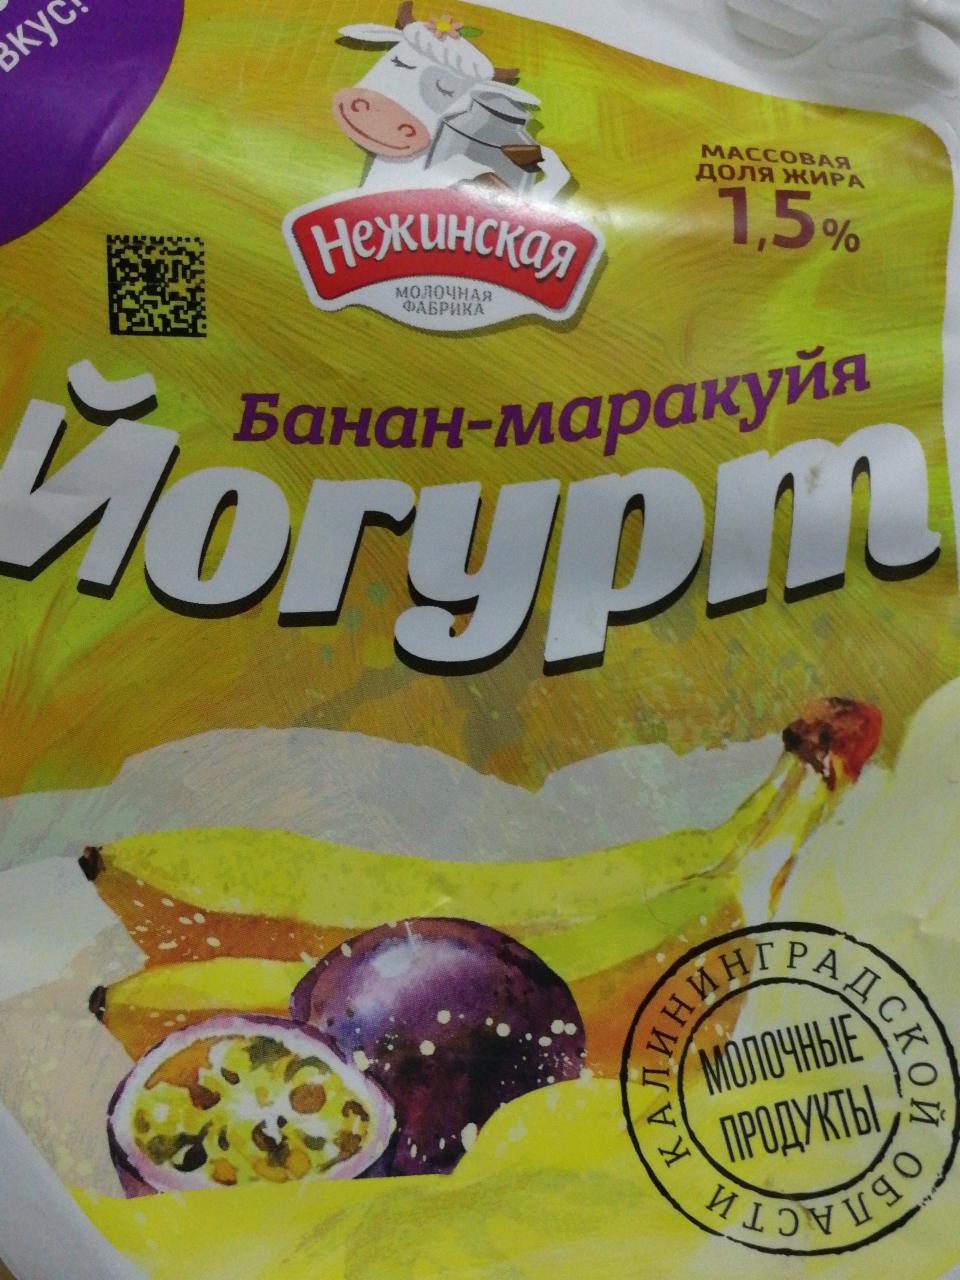 Фото - Йогурт питьевой 1.5% банан-маракуйя Нежинская молочная фабрика